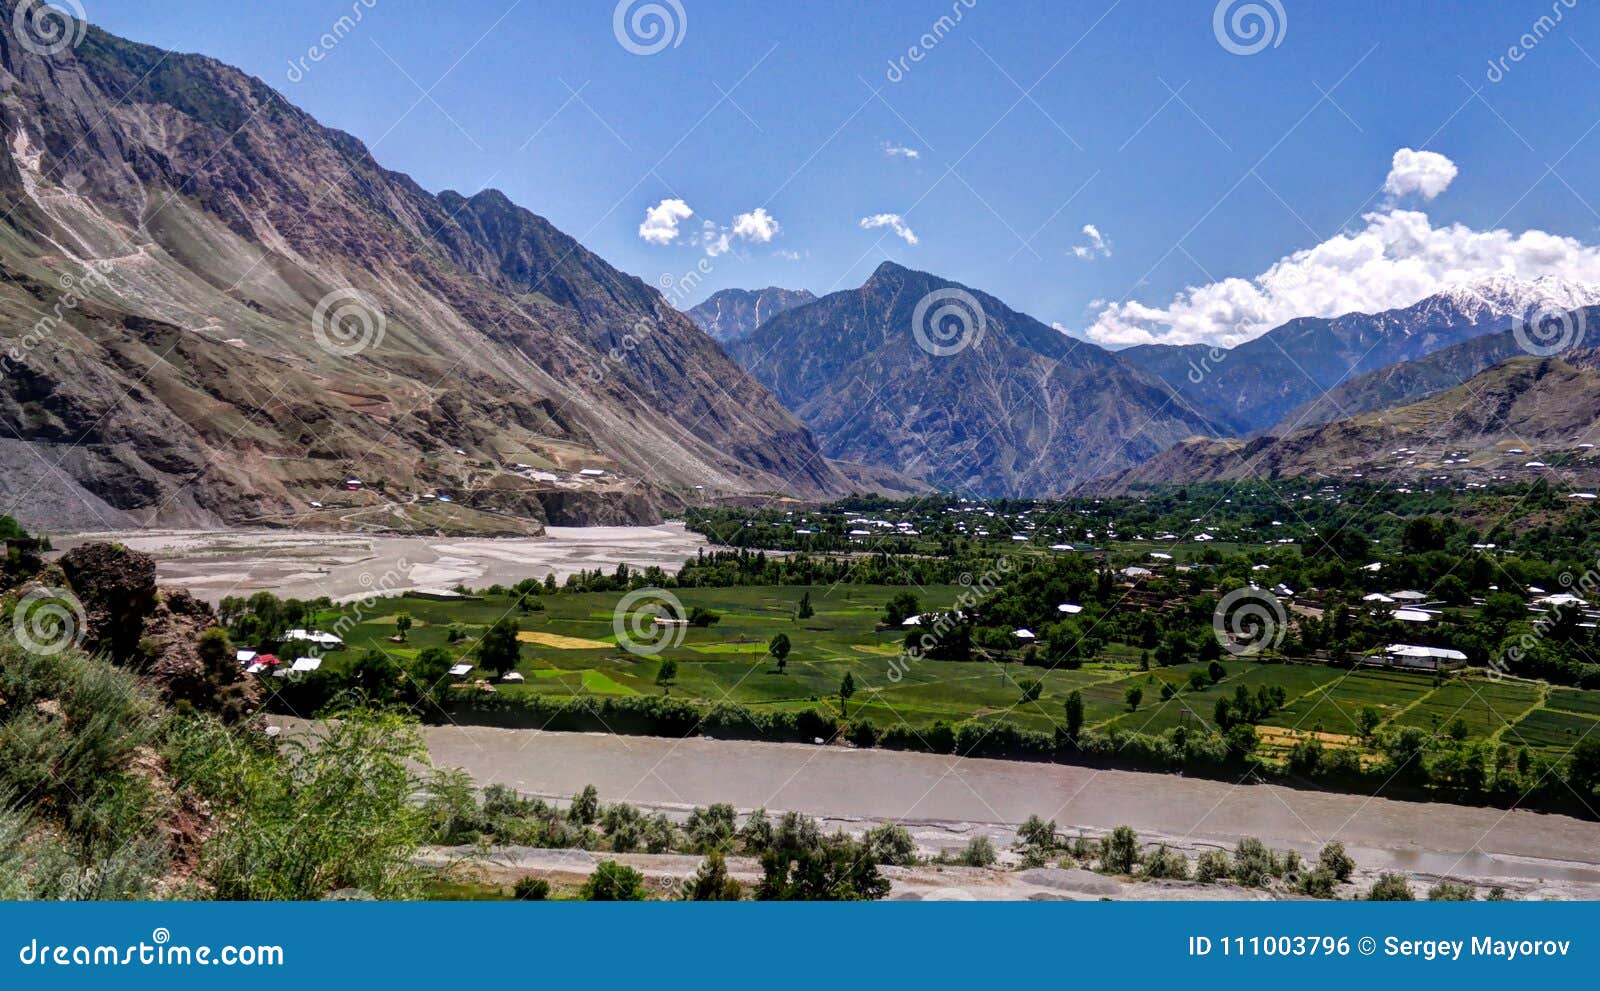 kunar aka chitral or kama river, khyber pakhtunkhwa province, pakistan